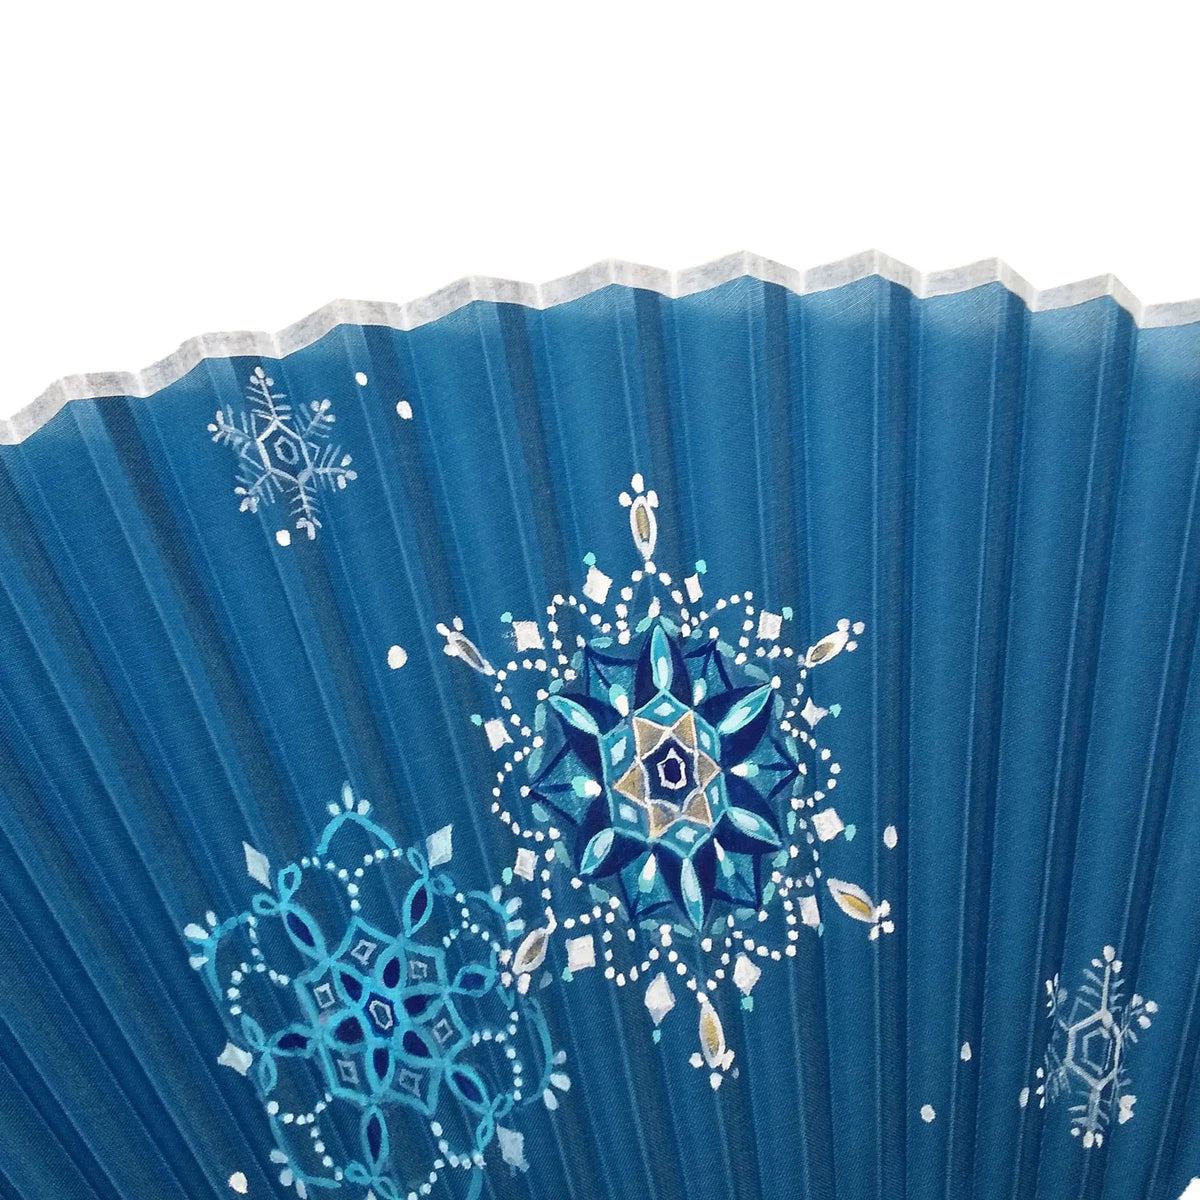 Vers l'éventail en soie, illustration du flocon de neige, coût peint à la main + éventail en soie (couleurs corail et libellule uniquement)